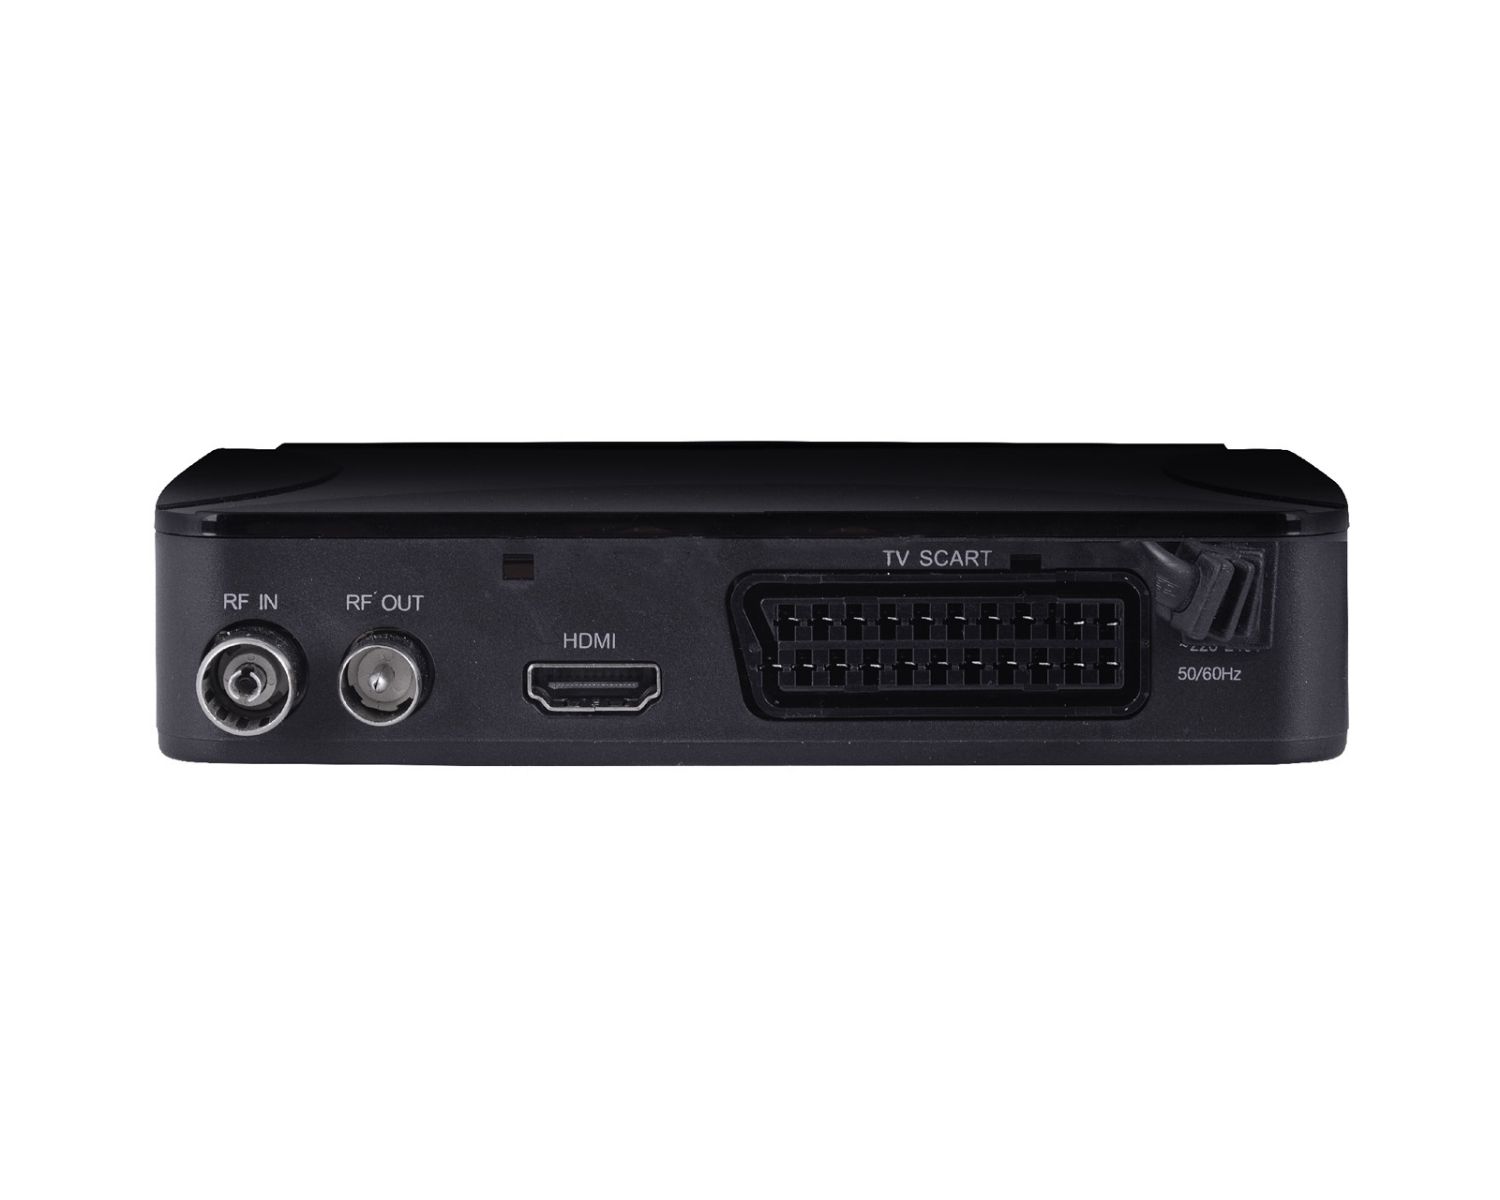 03368 - Decodificador TDT Trevi 4:3 16:9 FHD DVB-T2 USB 2.0 HDMI Negro (03368)